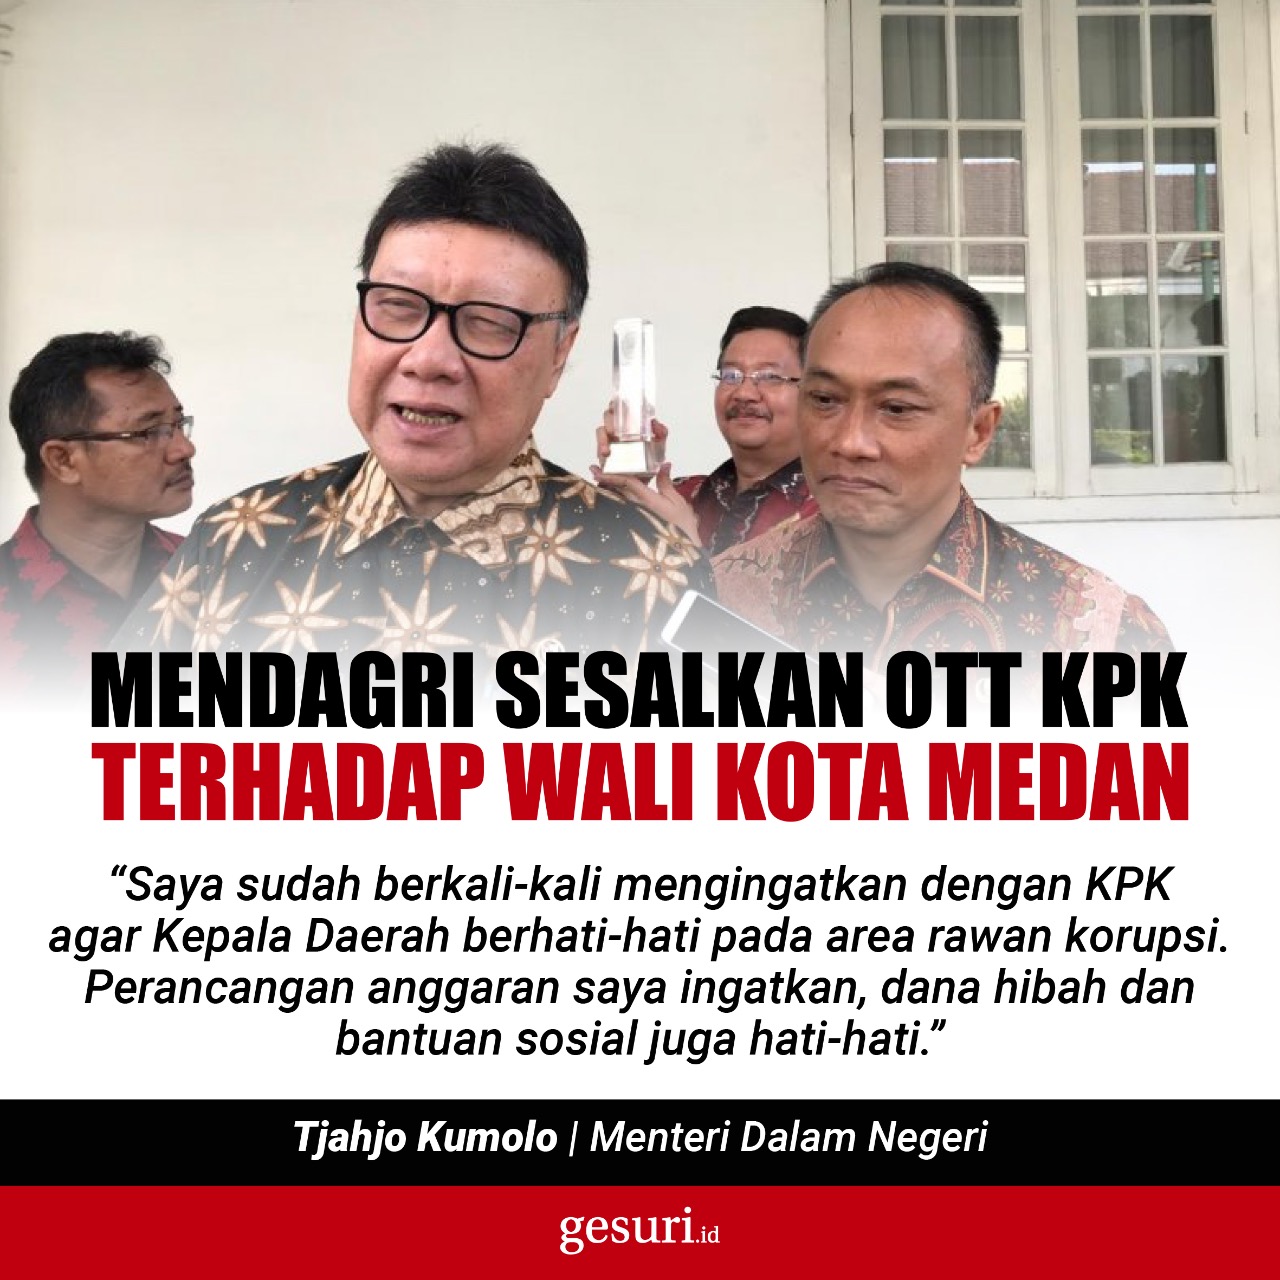 Mendagri Sesalkan OTT KPK terhadap Wali Kota Medan